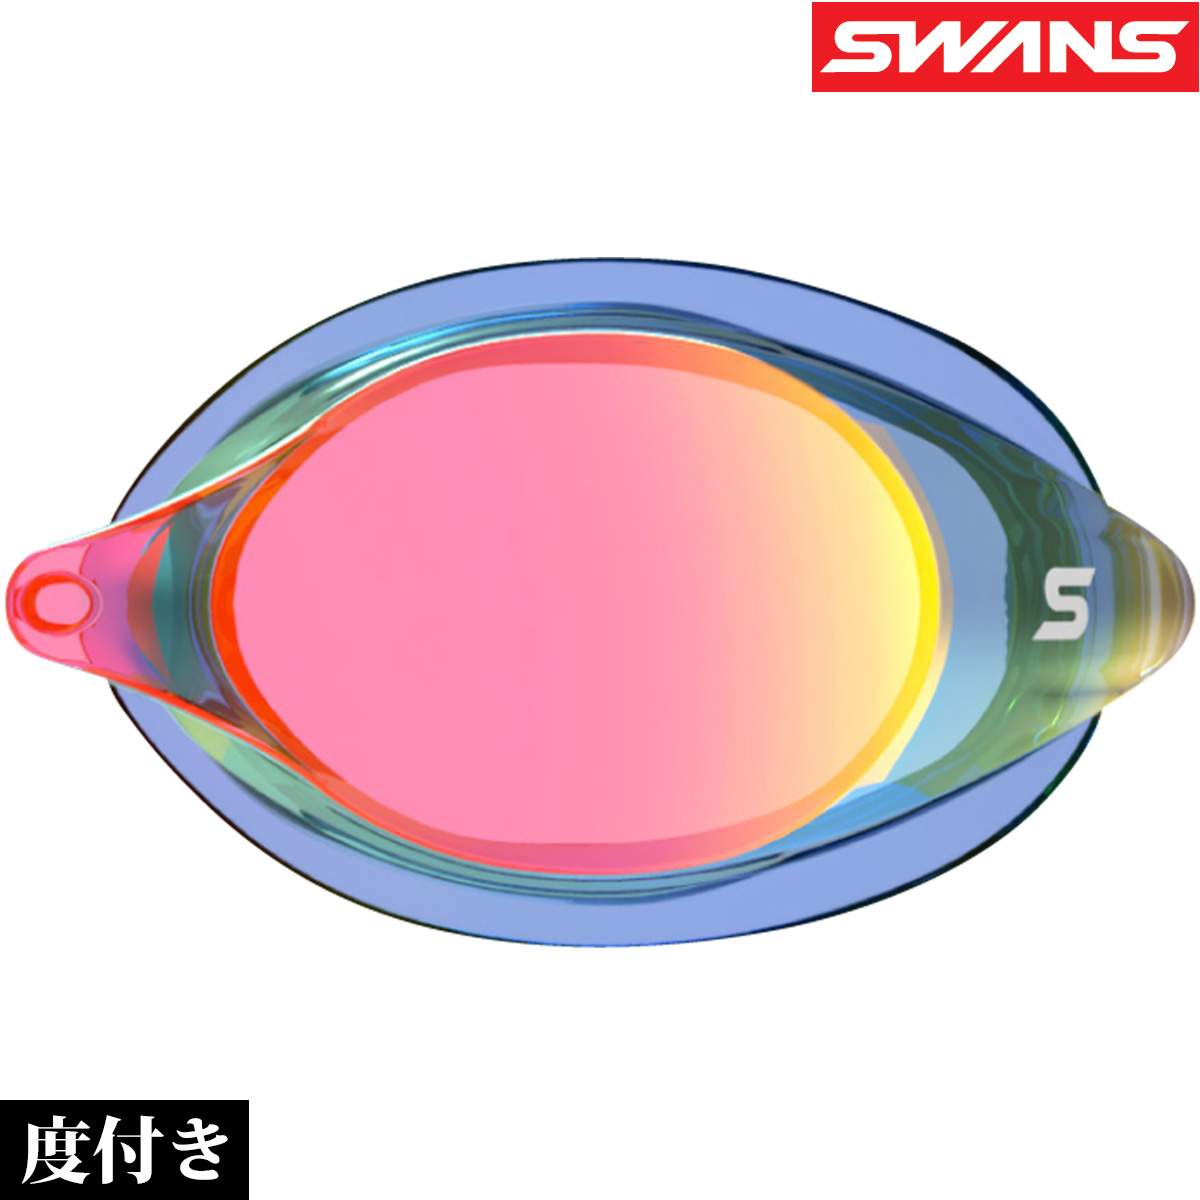 スイミングゴーグル 度付き 水泳ゴーグル おすすめ ゴーグル 水泳 日本製 ノンクッション 水中ゴーグル 品質検査済 SWANS 片眼レンズ 曇り止め スワンズ SRCL-7M-NASHD スイムゴーグル 蔵